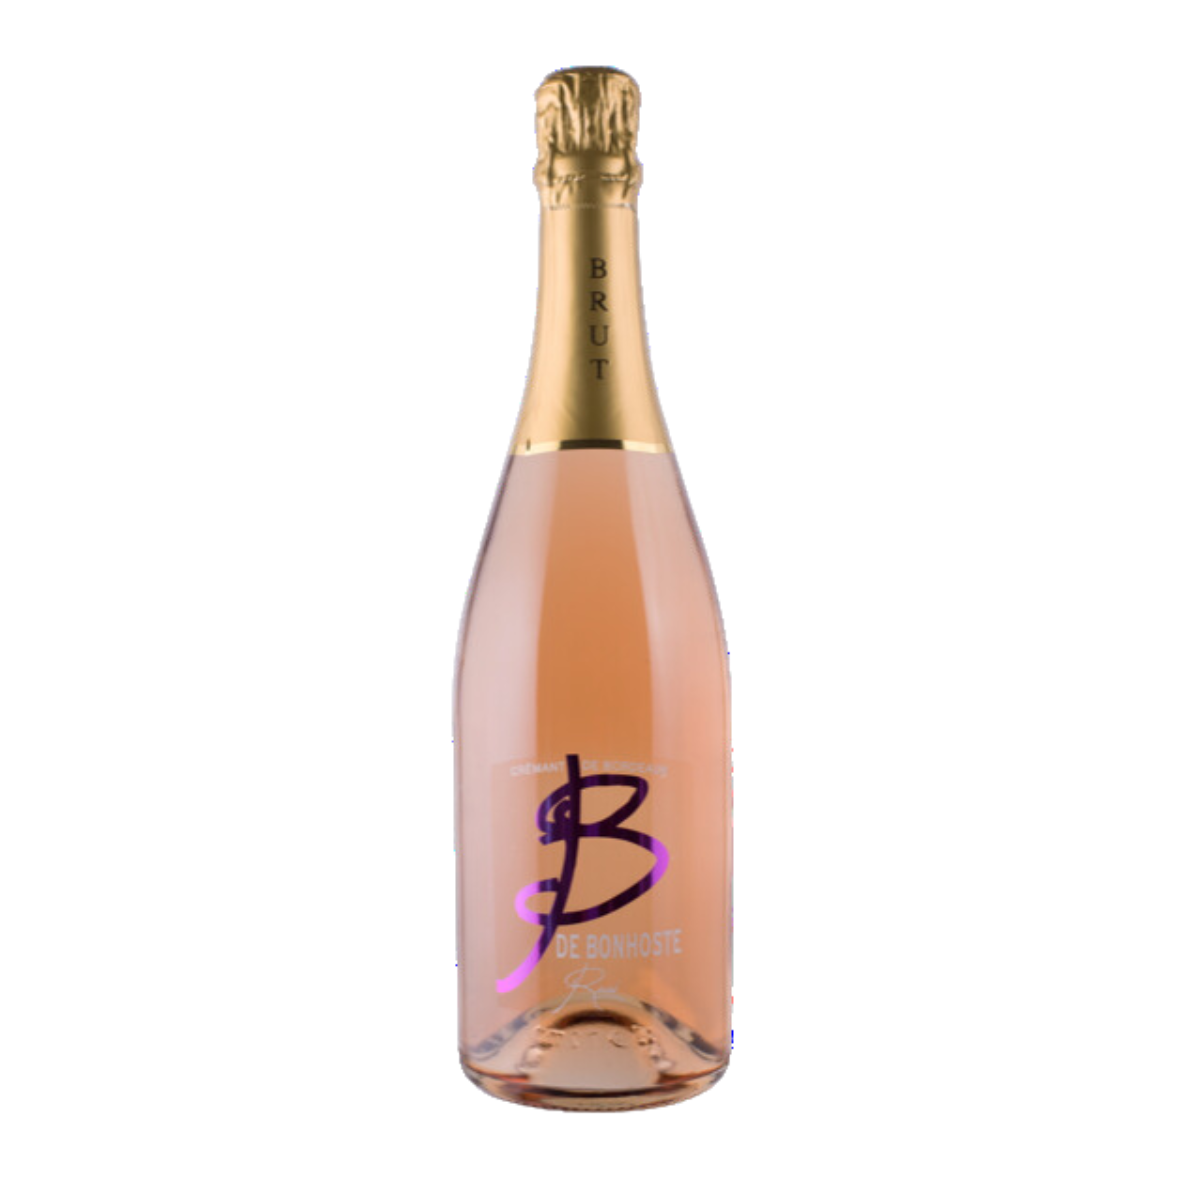 B de Bonhoste - Crémant de Bordeaux 2022 rosé